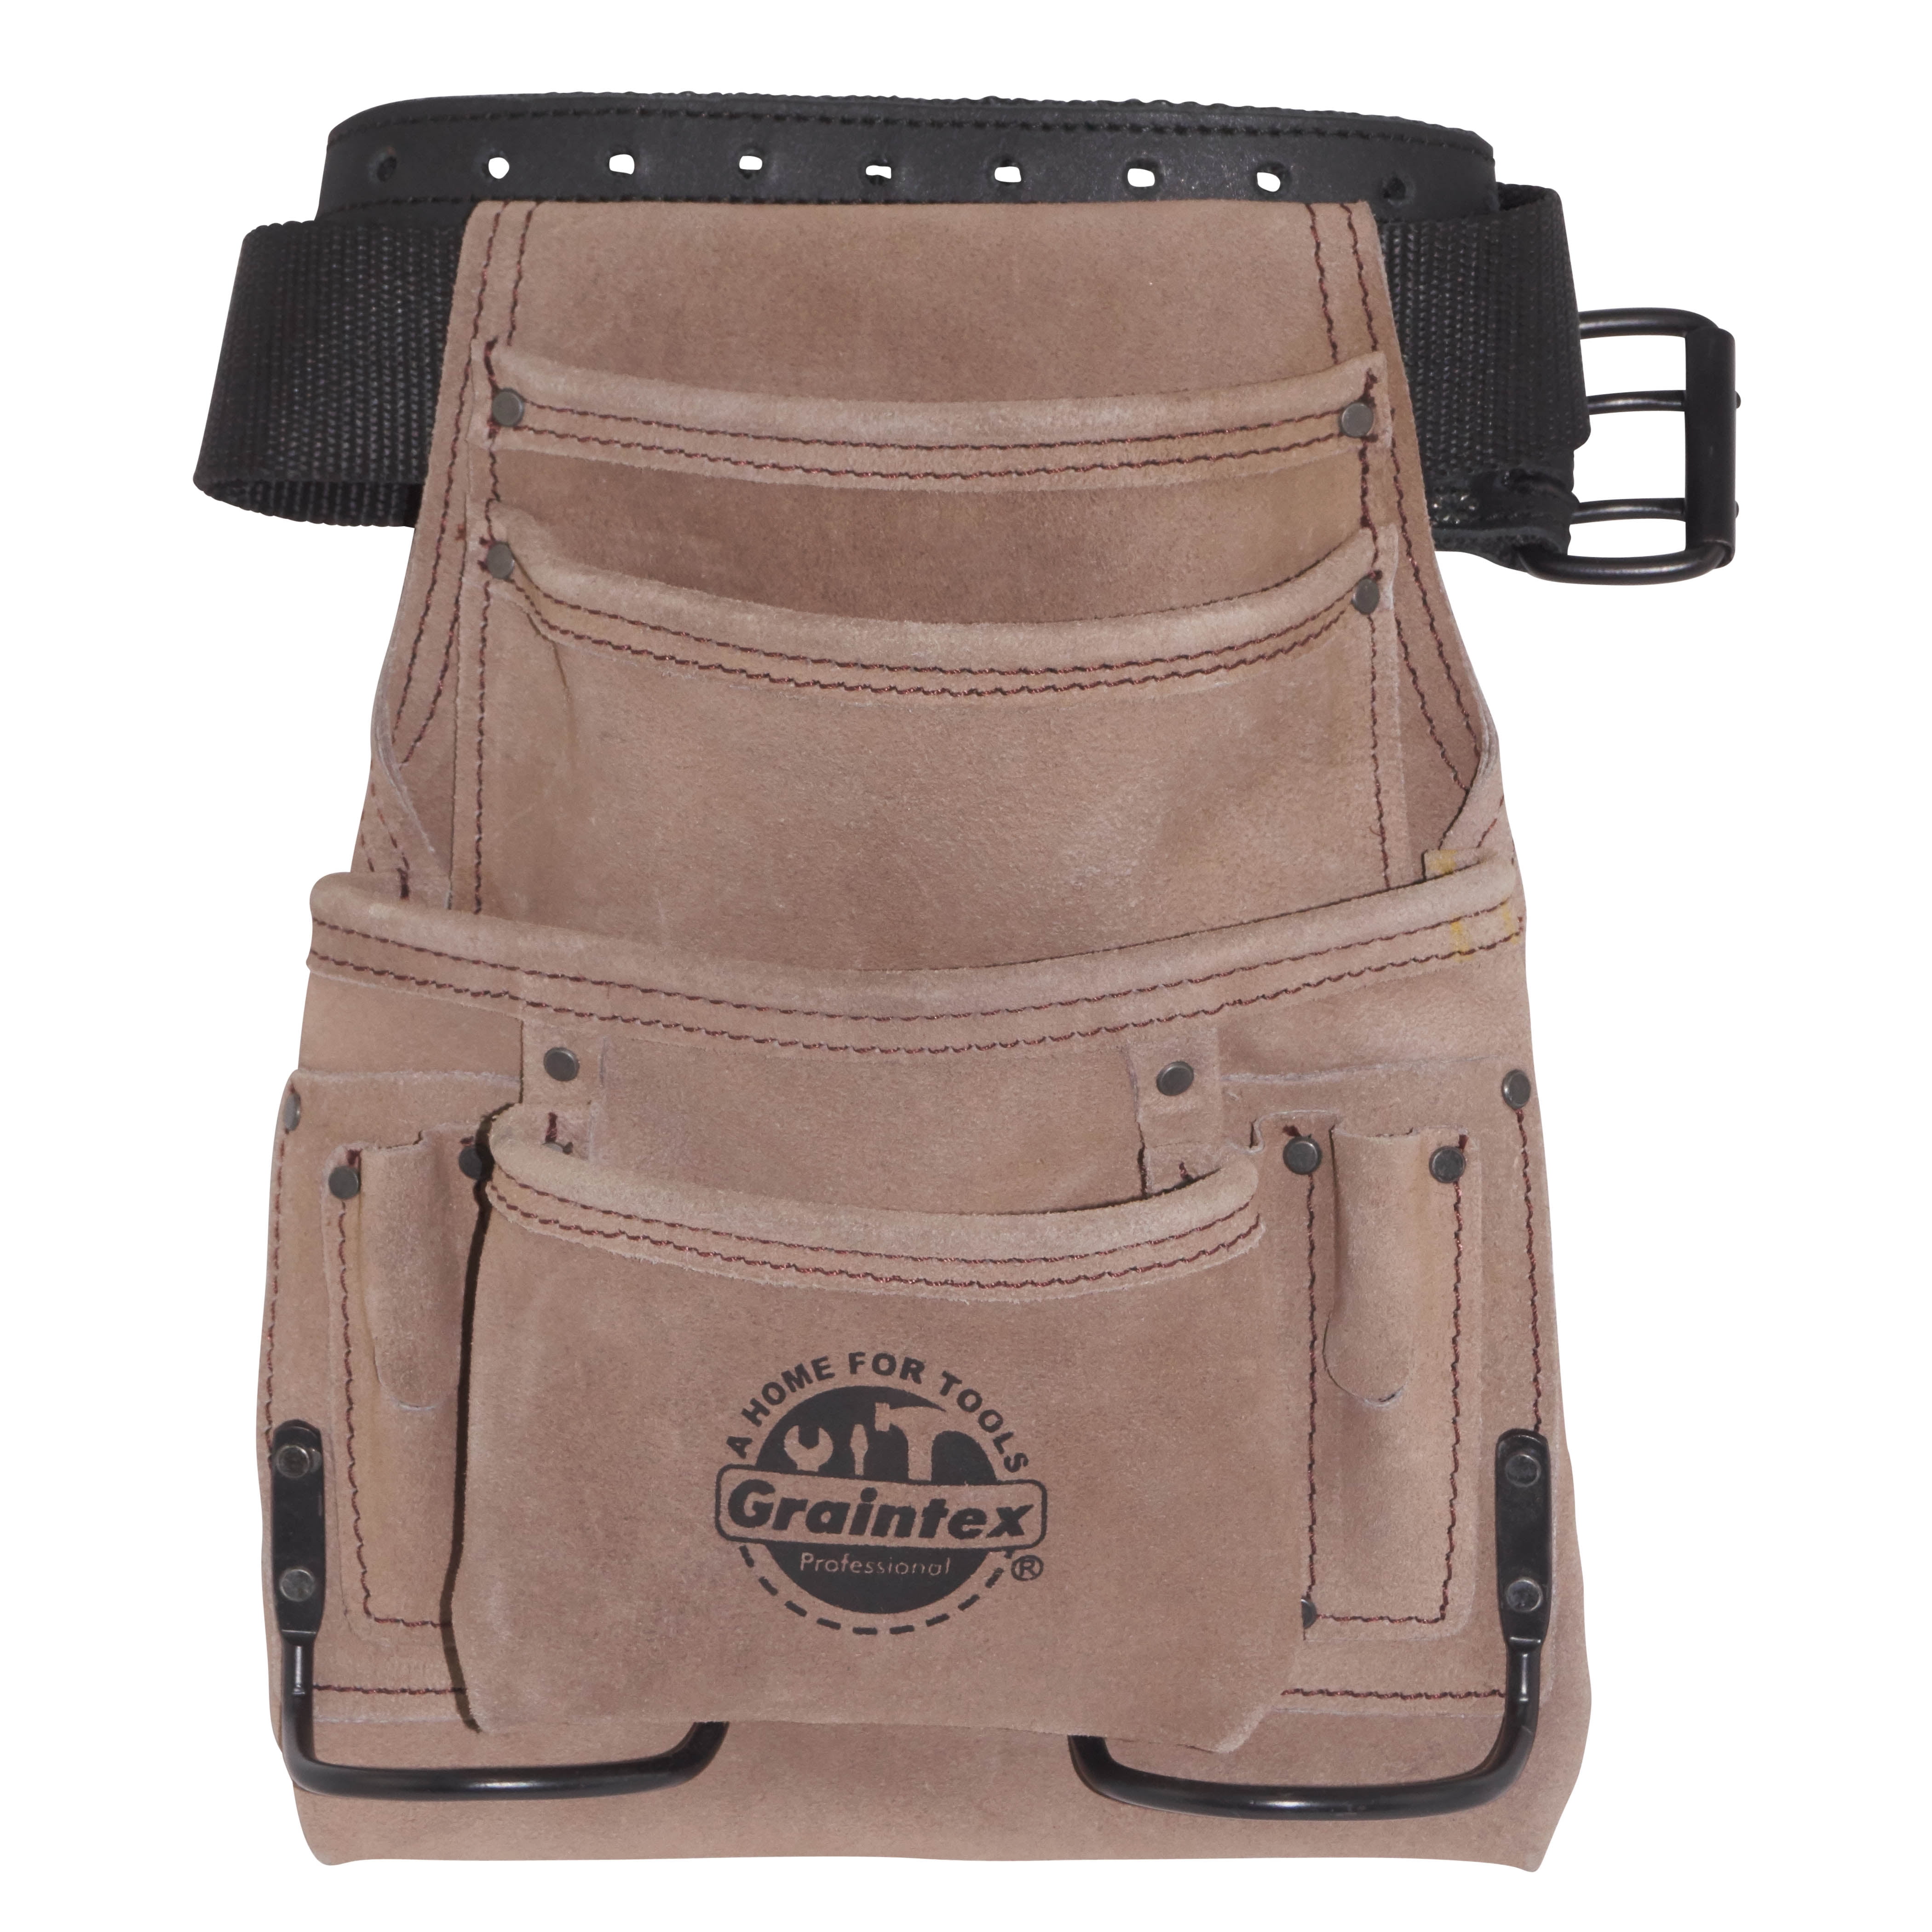 Details about   Estwing 7 Pocket Leather Tool Belt Pouch Apron Set 94744 